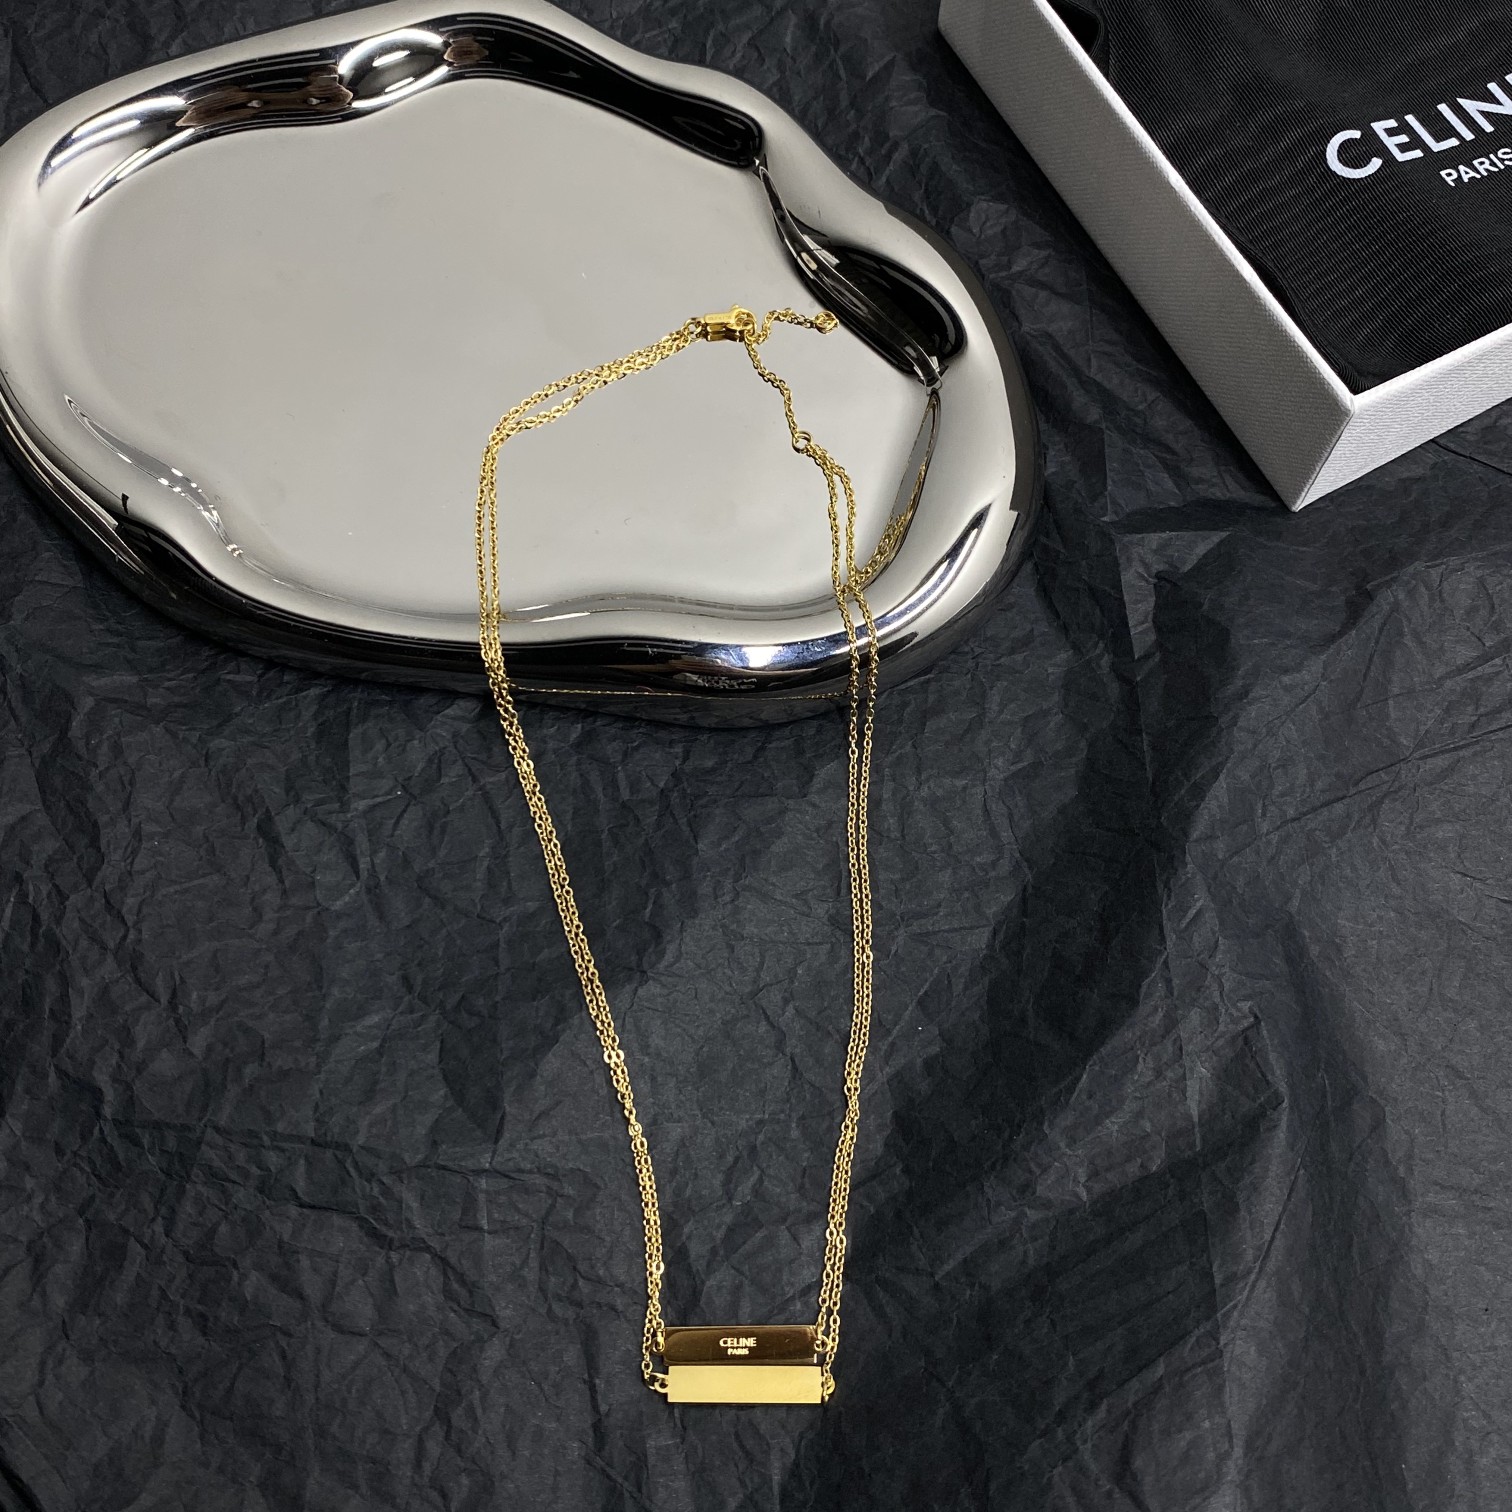 Celine Jewelry Necklaces & Pendants